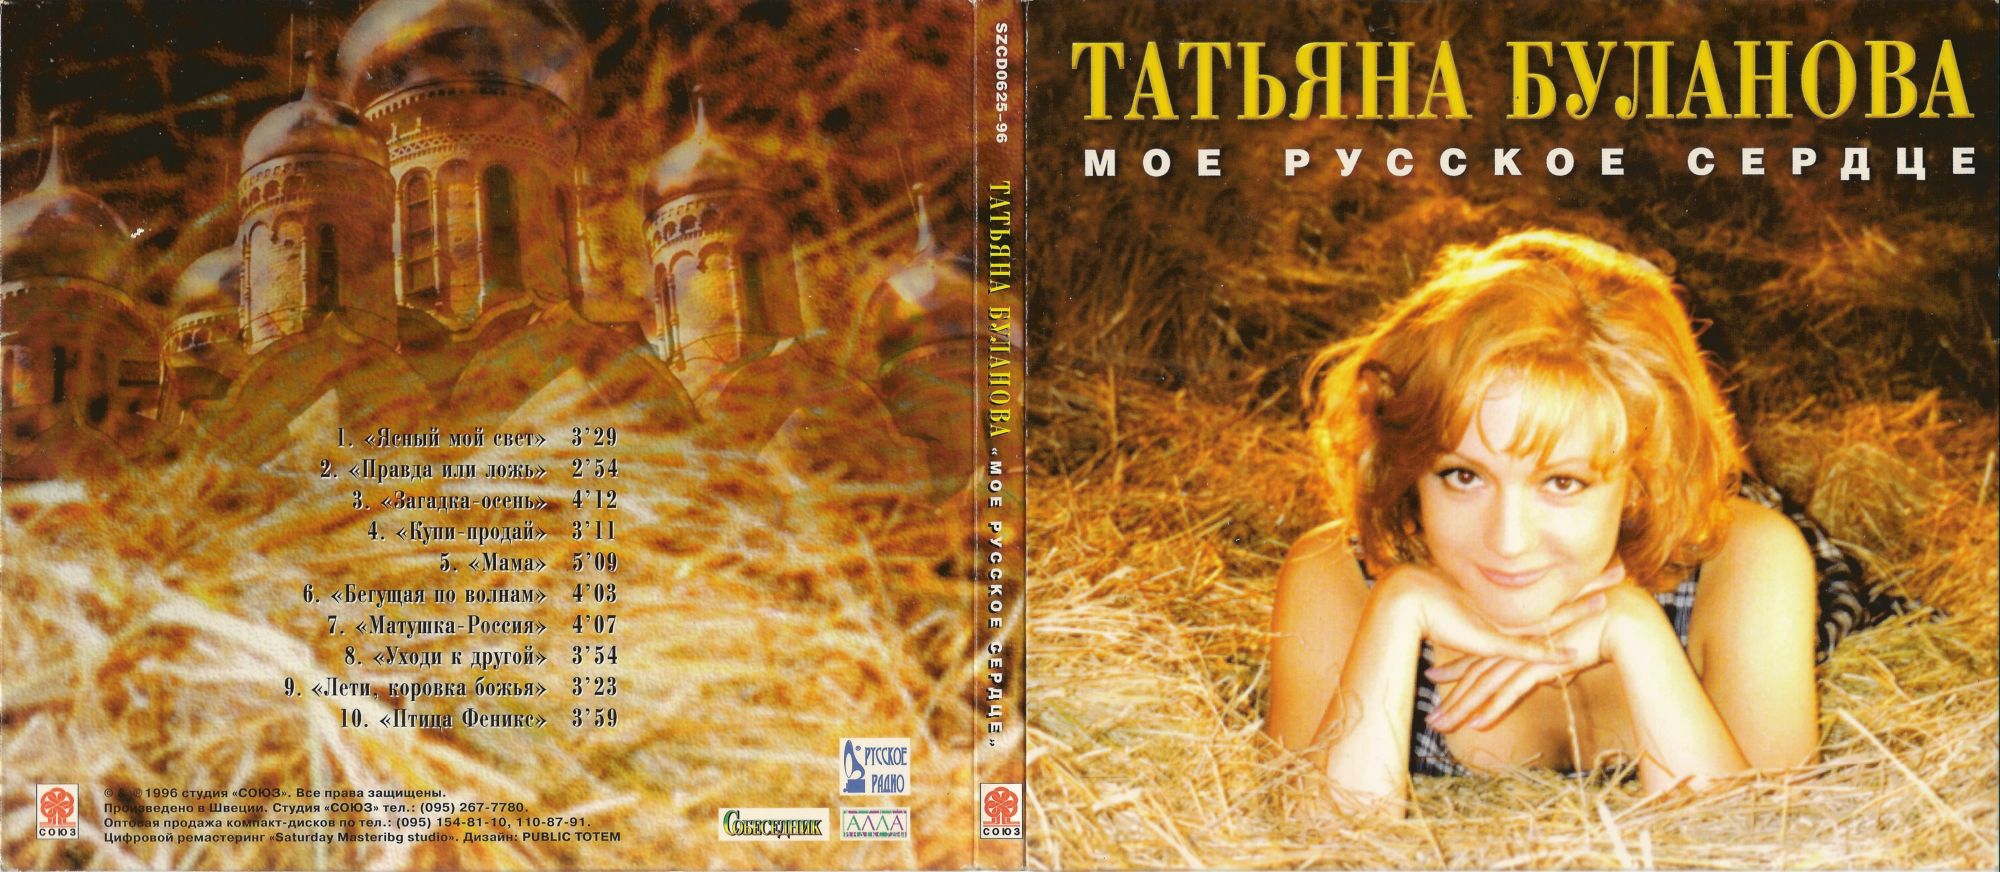 Обложка альбома Татьяна Буланова мое русское сердце